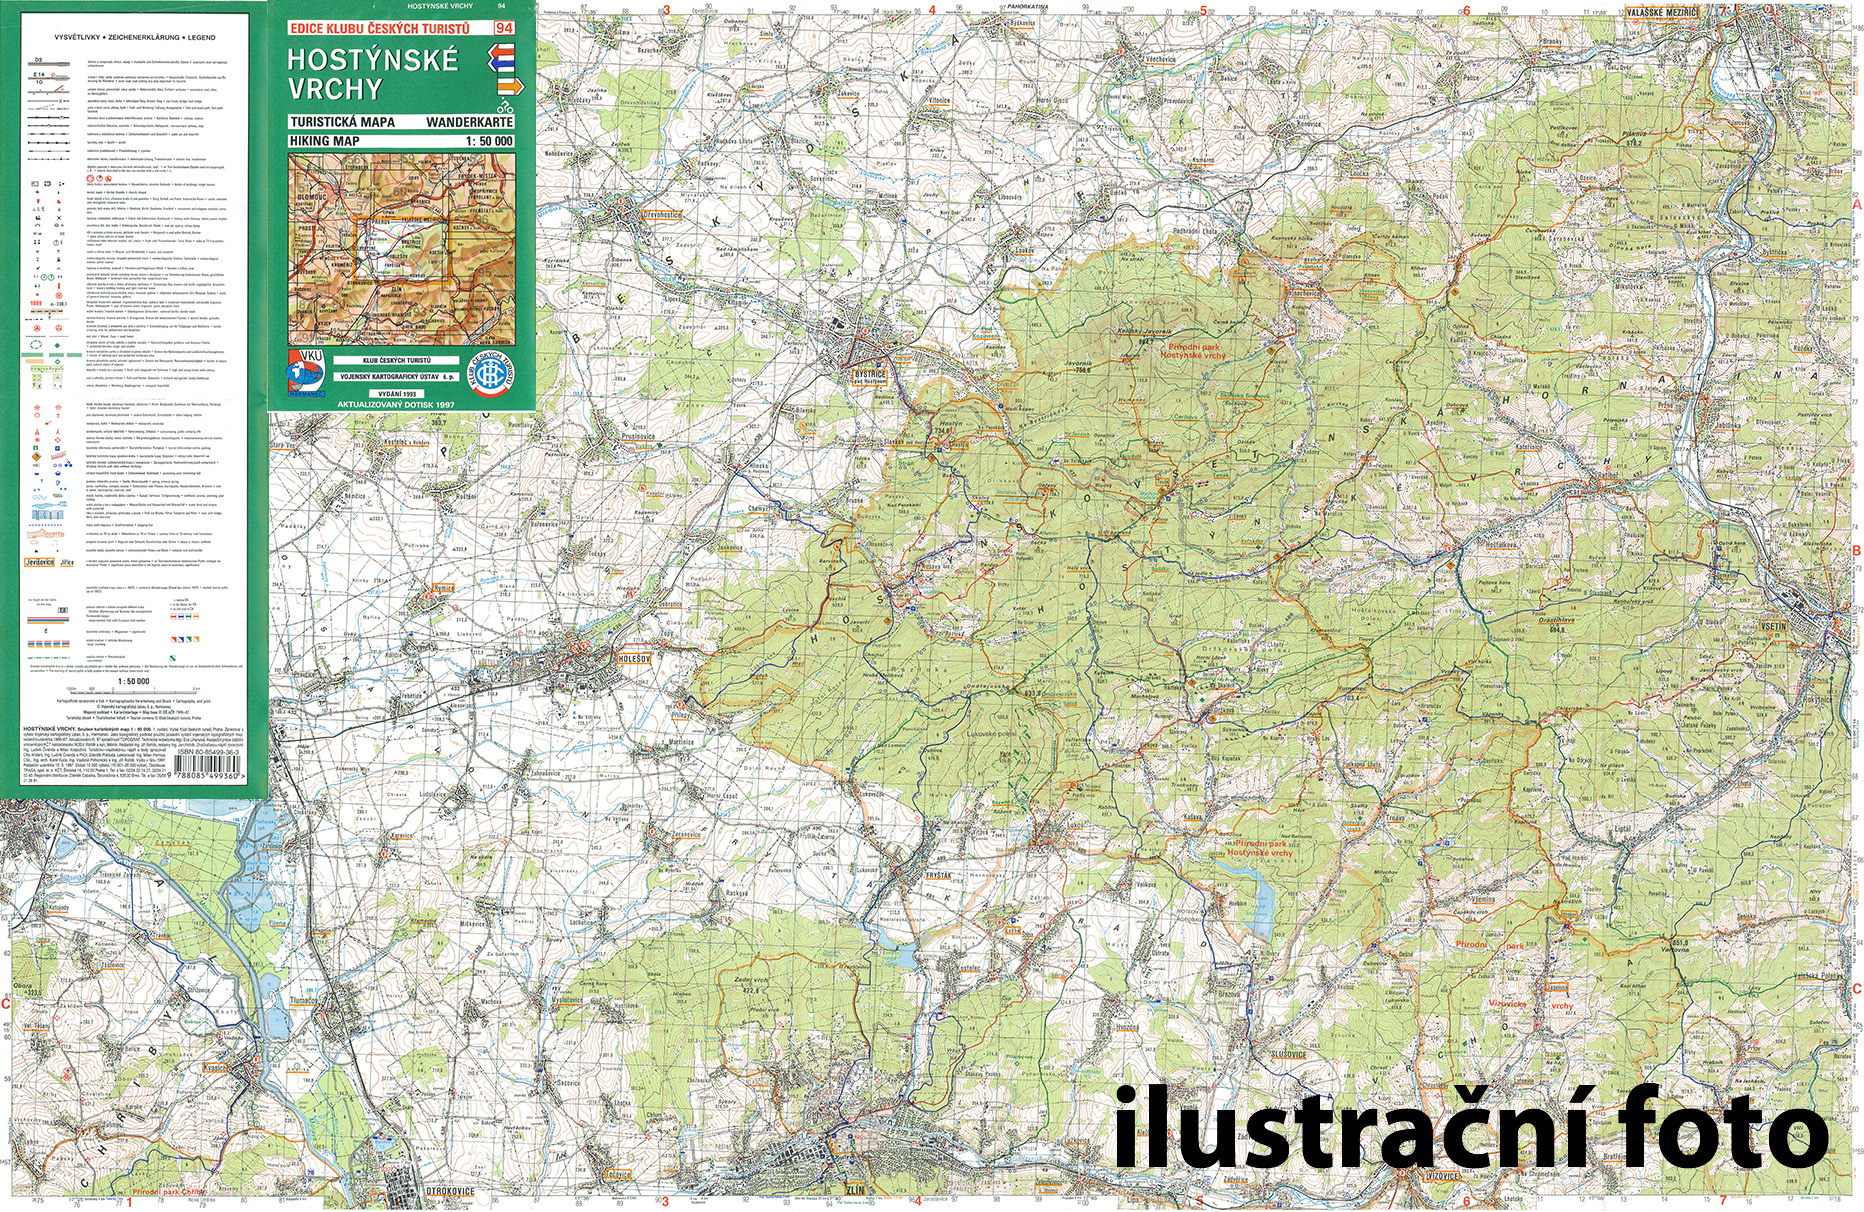 Nástěnná mapa Zábřežsko - turistická (52)